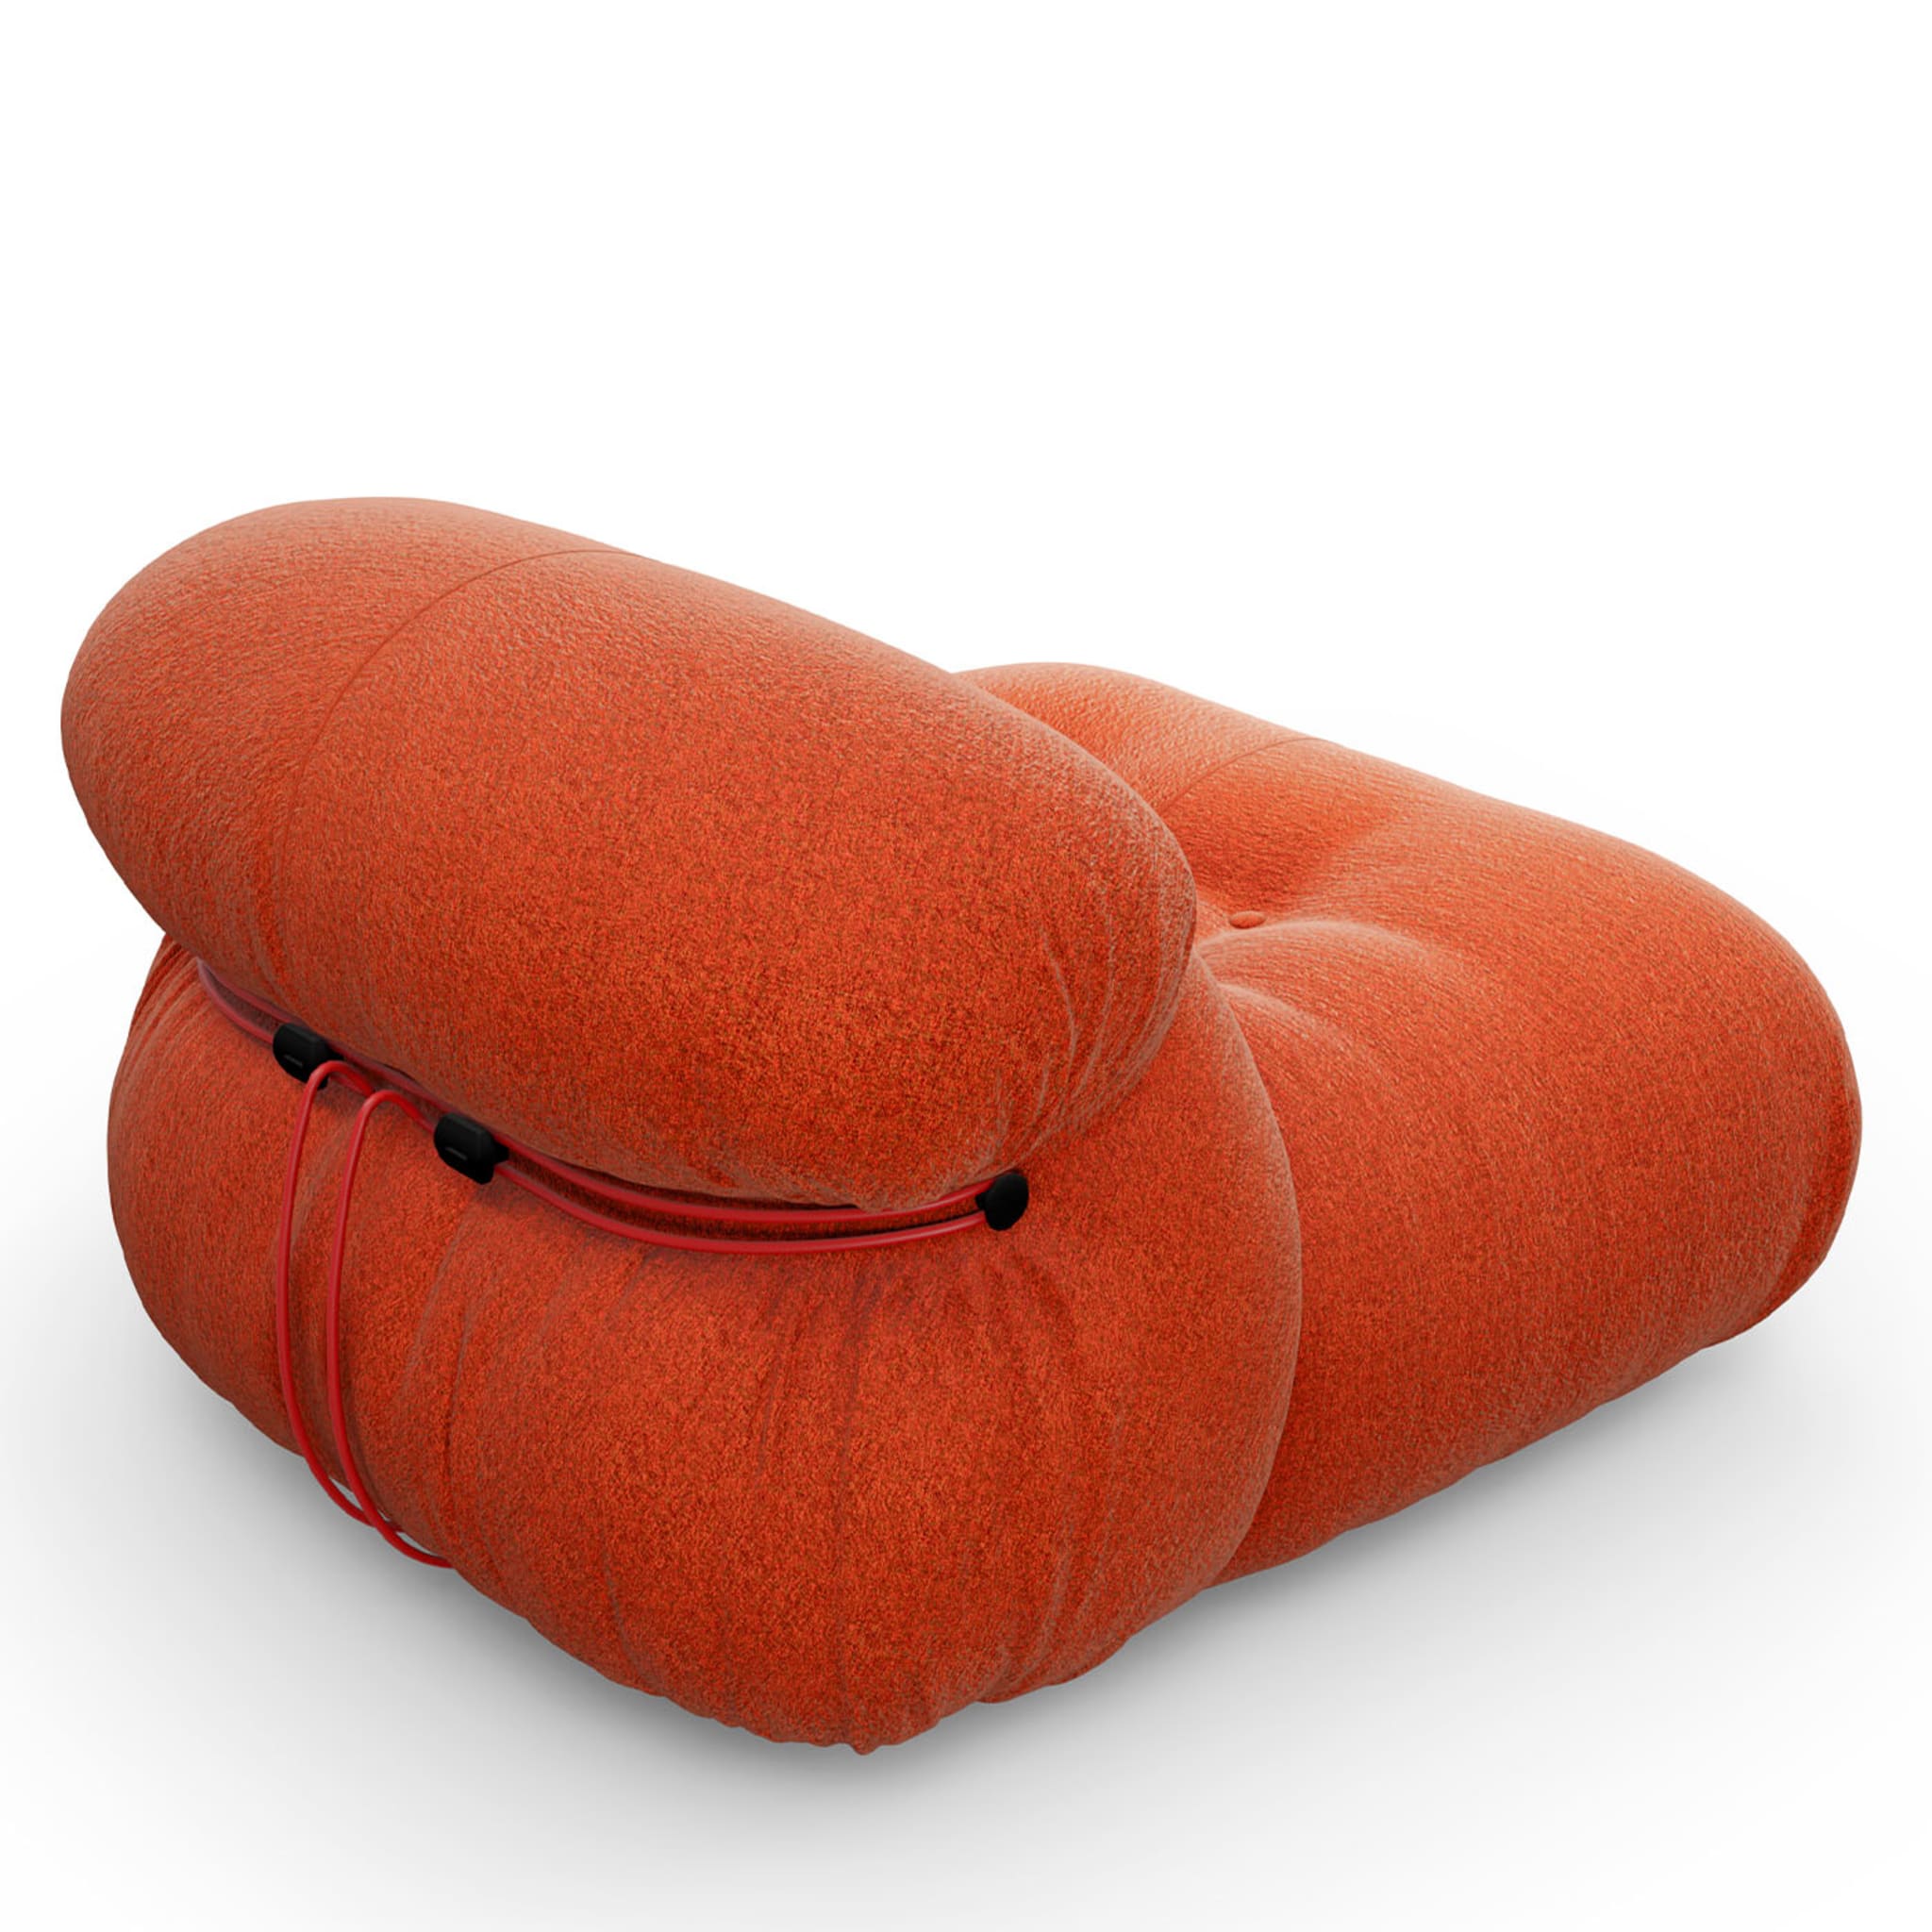 Soriana Orange Armchair by Afra & Tobia Scarpa - Alternative view 1